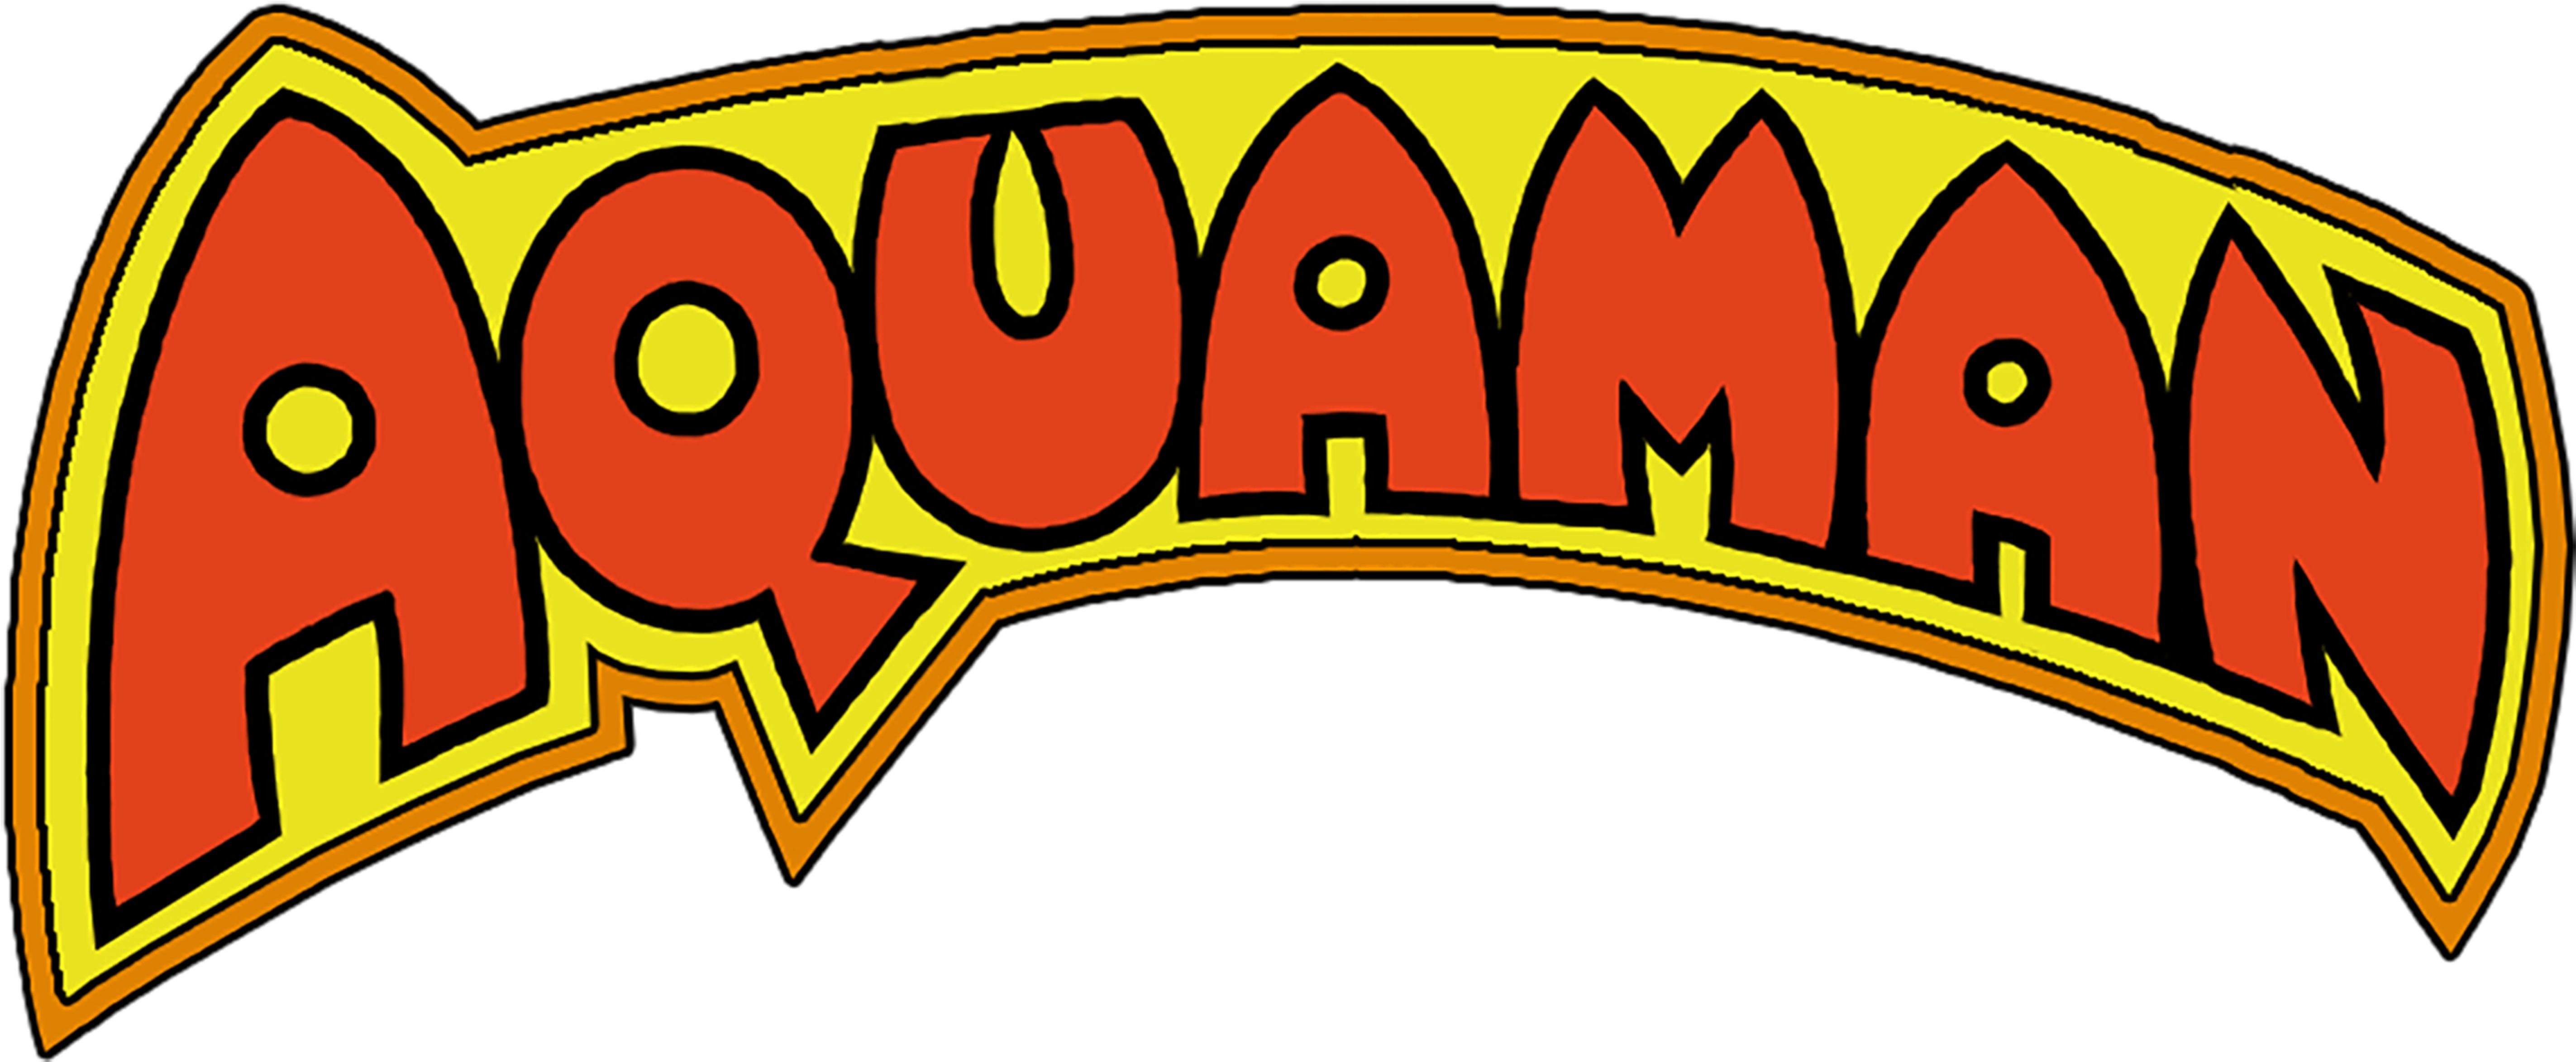 Aquaman (3 DVDs Box Set)